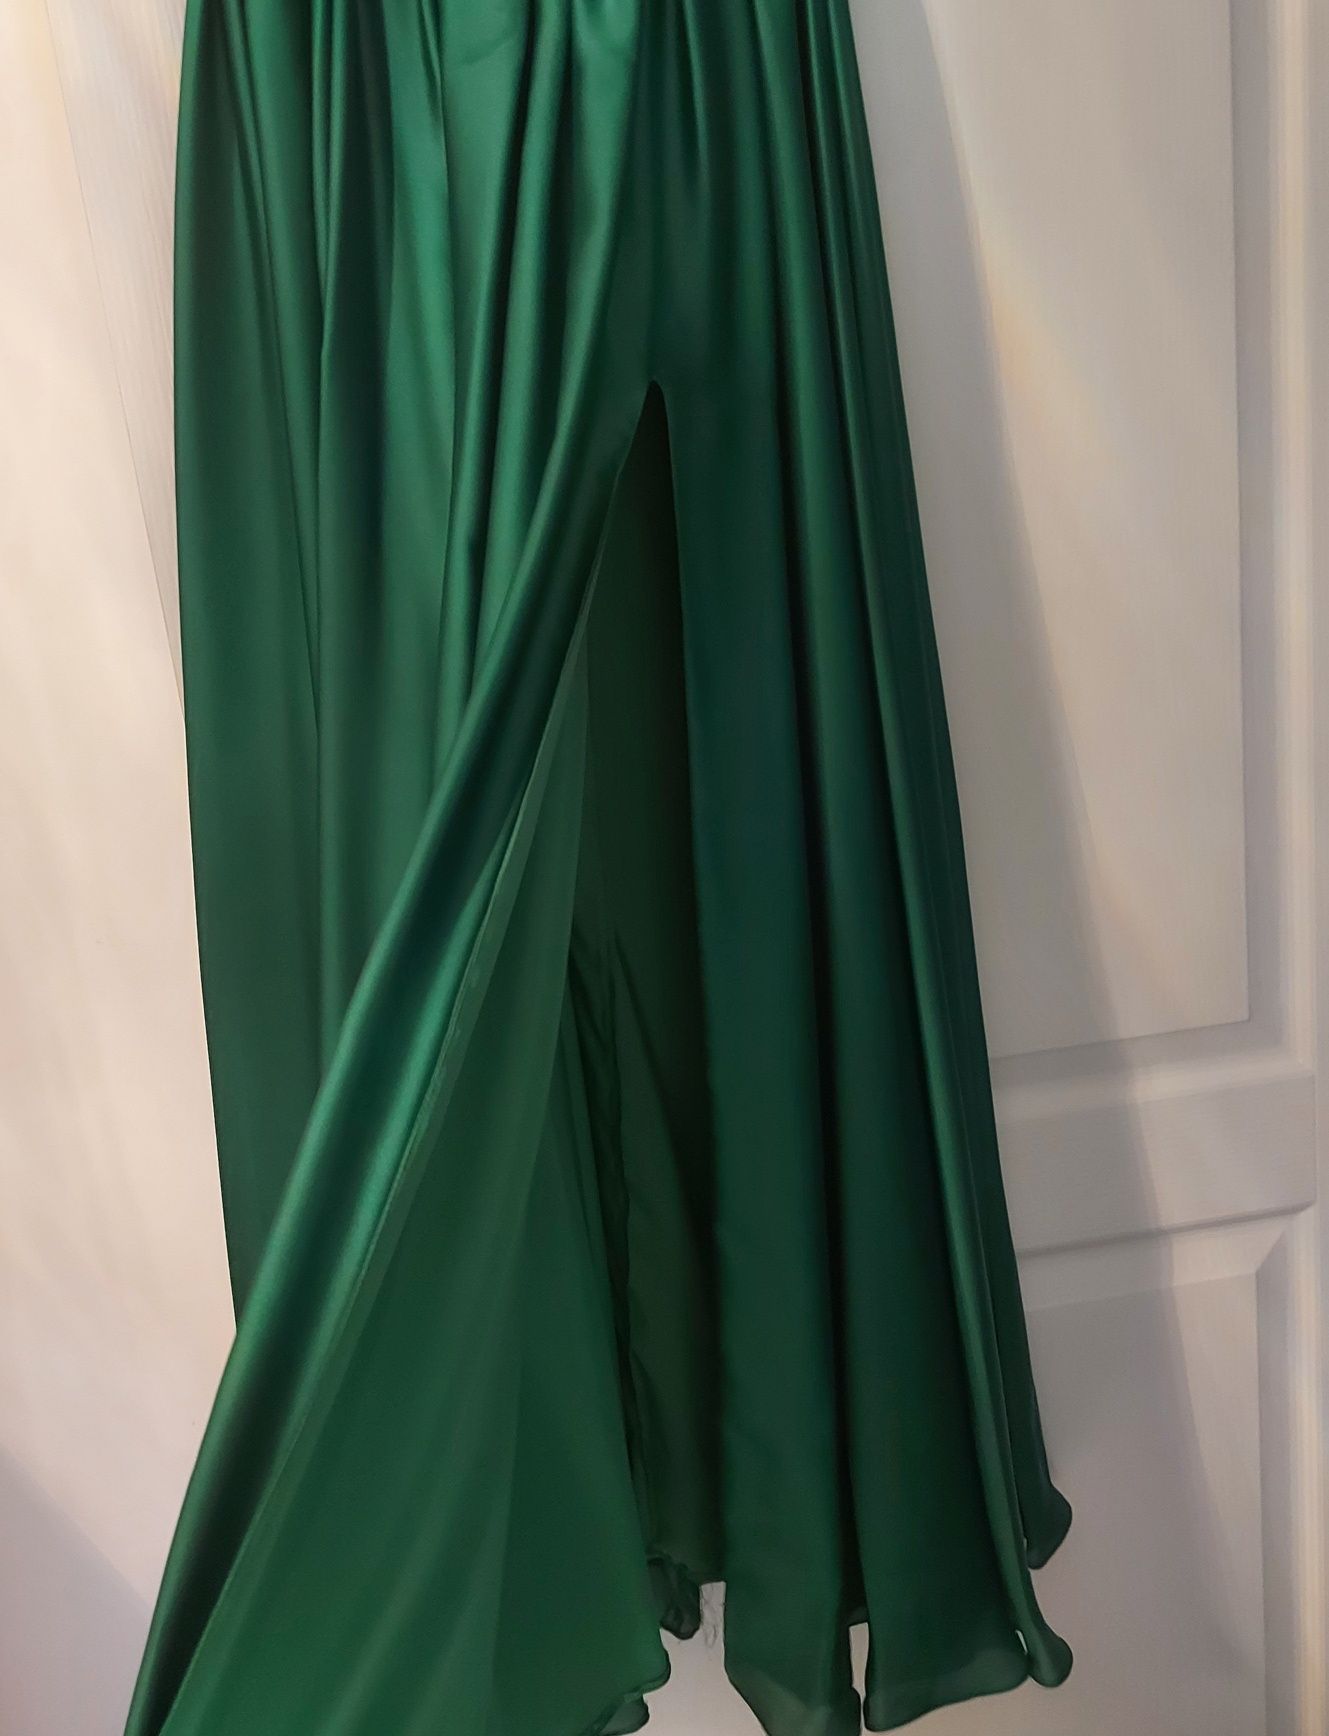 Rochie ocazie, verde, lunga